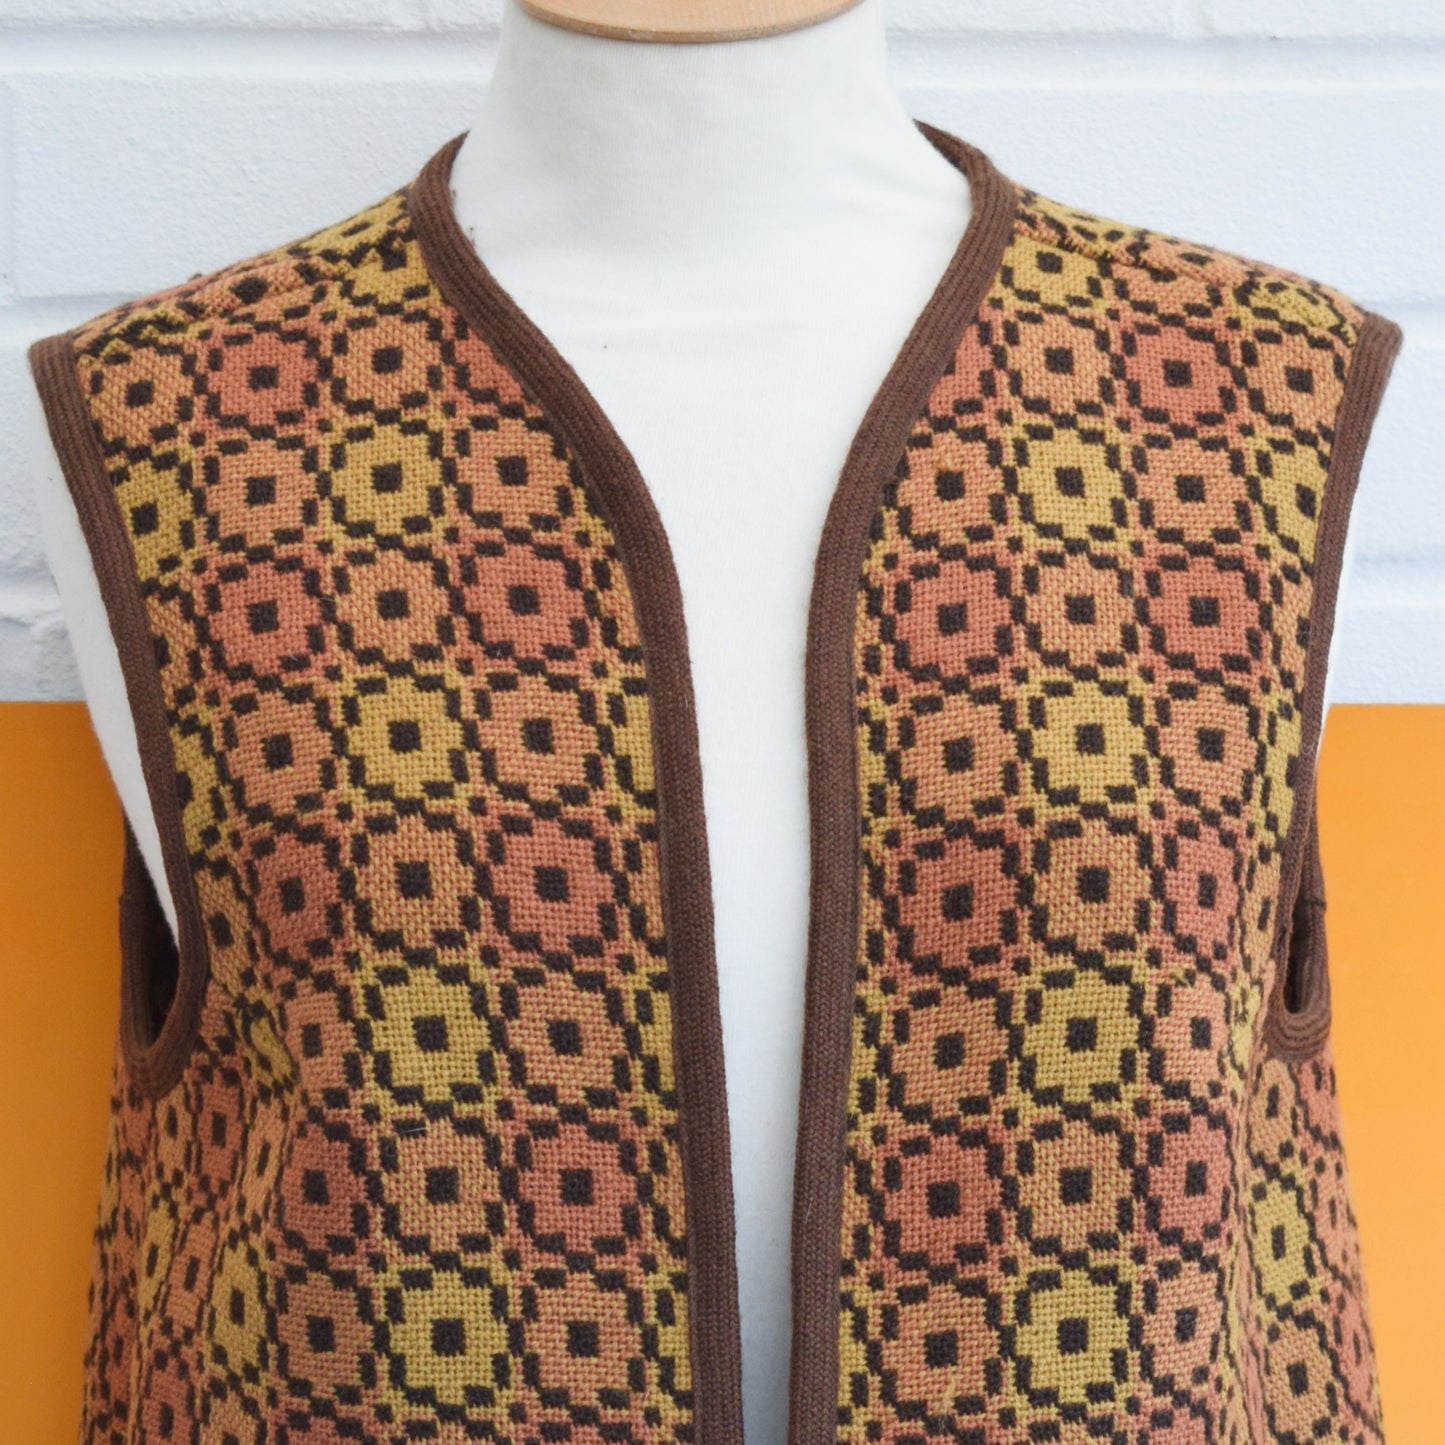 Vintage 1960s Welsh Tapestry Waistcoats - Brown / Orange